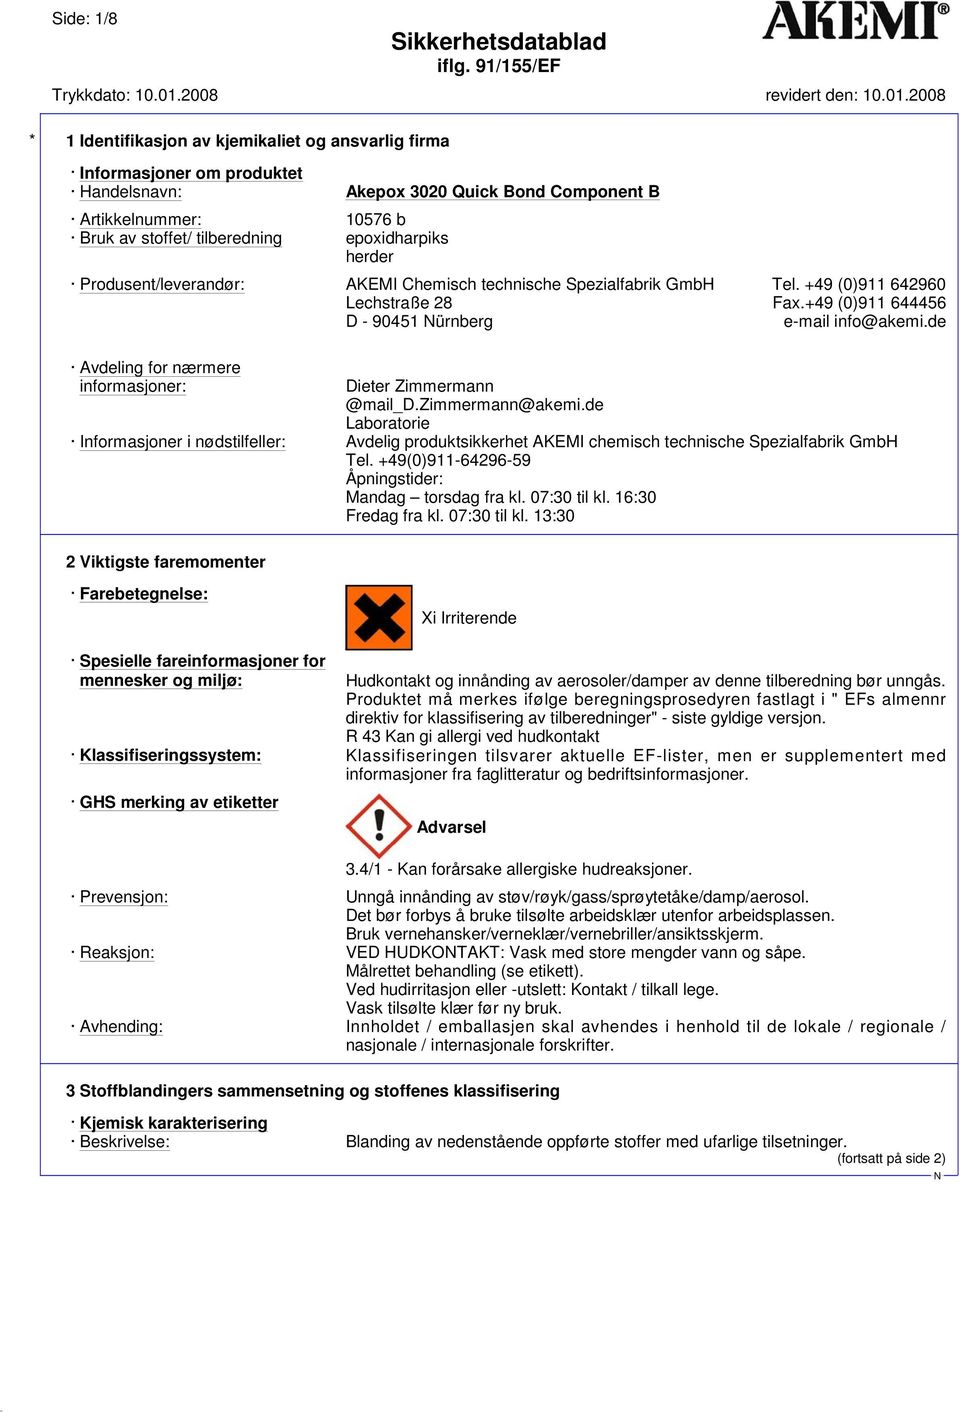 zimmermann@akemi.de Laboratorie Informasjoner i nødstilfeller: Avdelig produktsikkerhet AKEMI chemisch technische Spezialfabrik GmbH Tel. +49(0)911-64296-59 Åpningstider: Mandag torsdag fra kl.